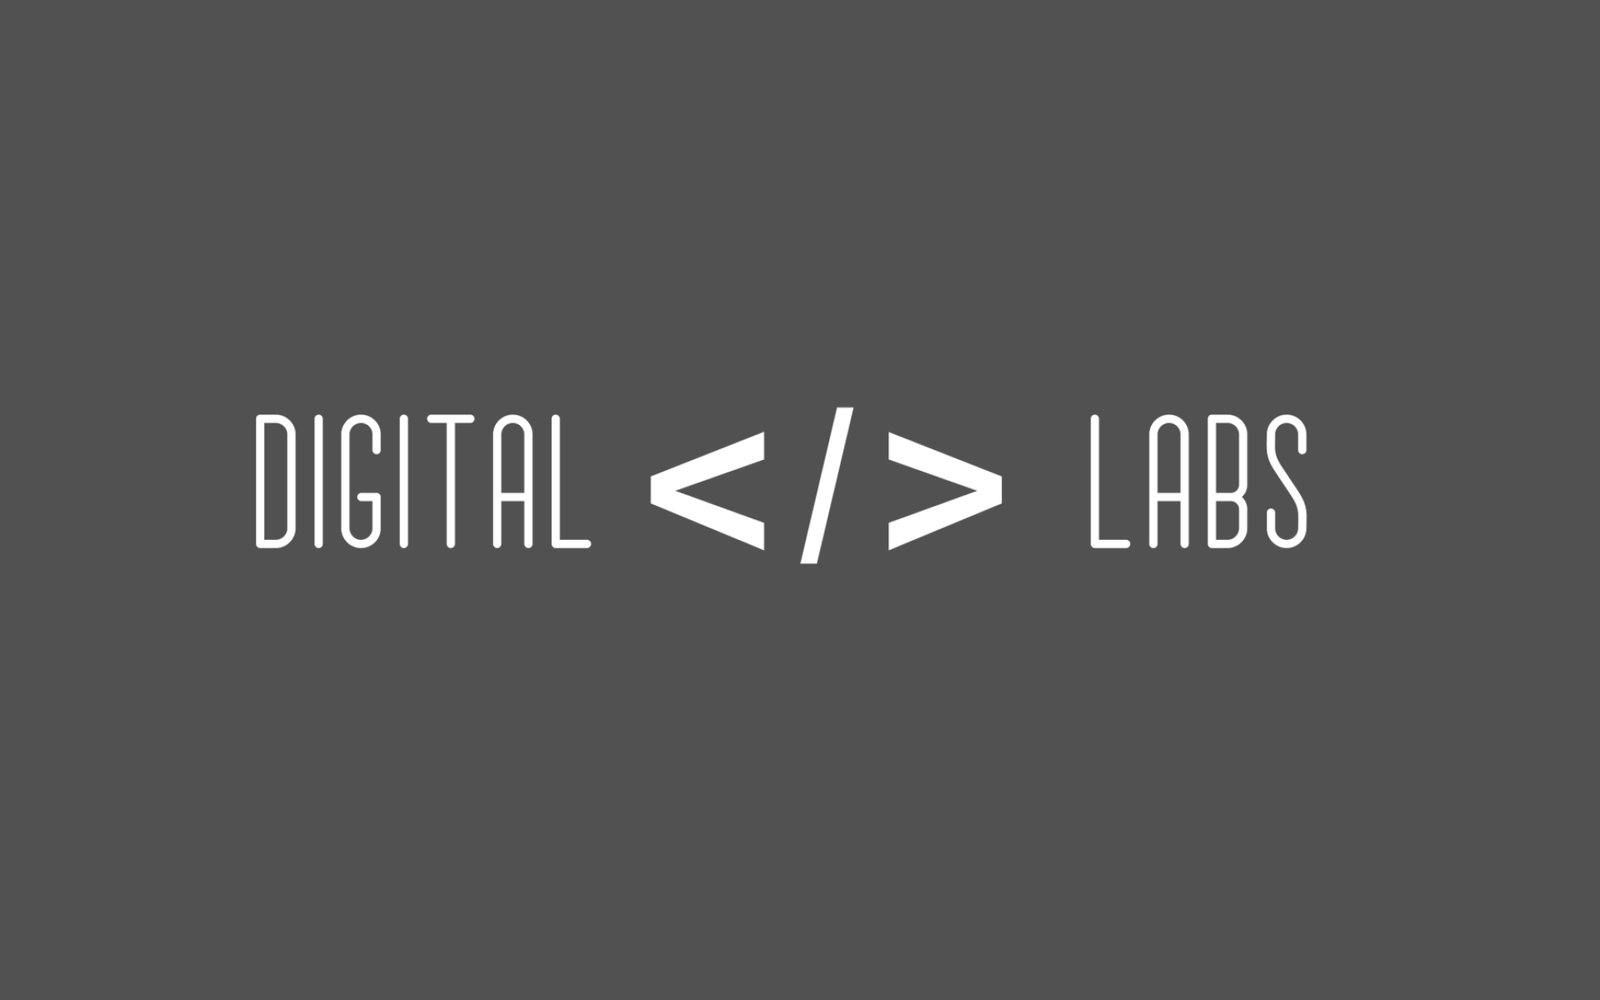 Digital V Labs Prima Pagina